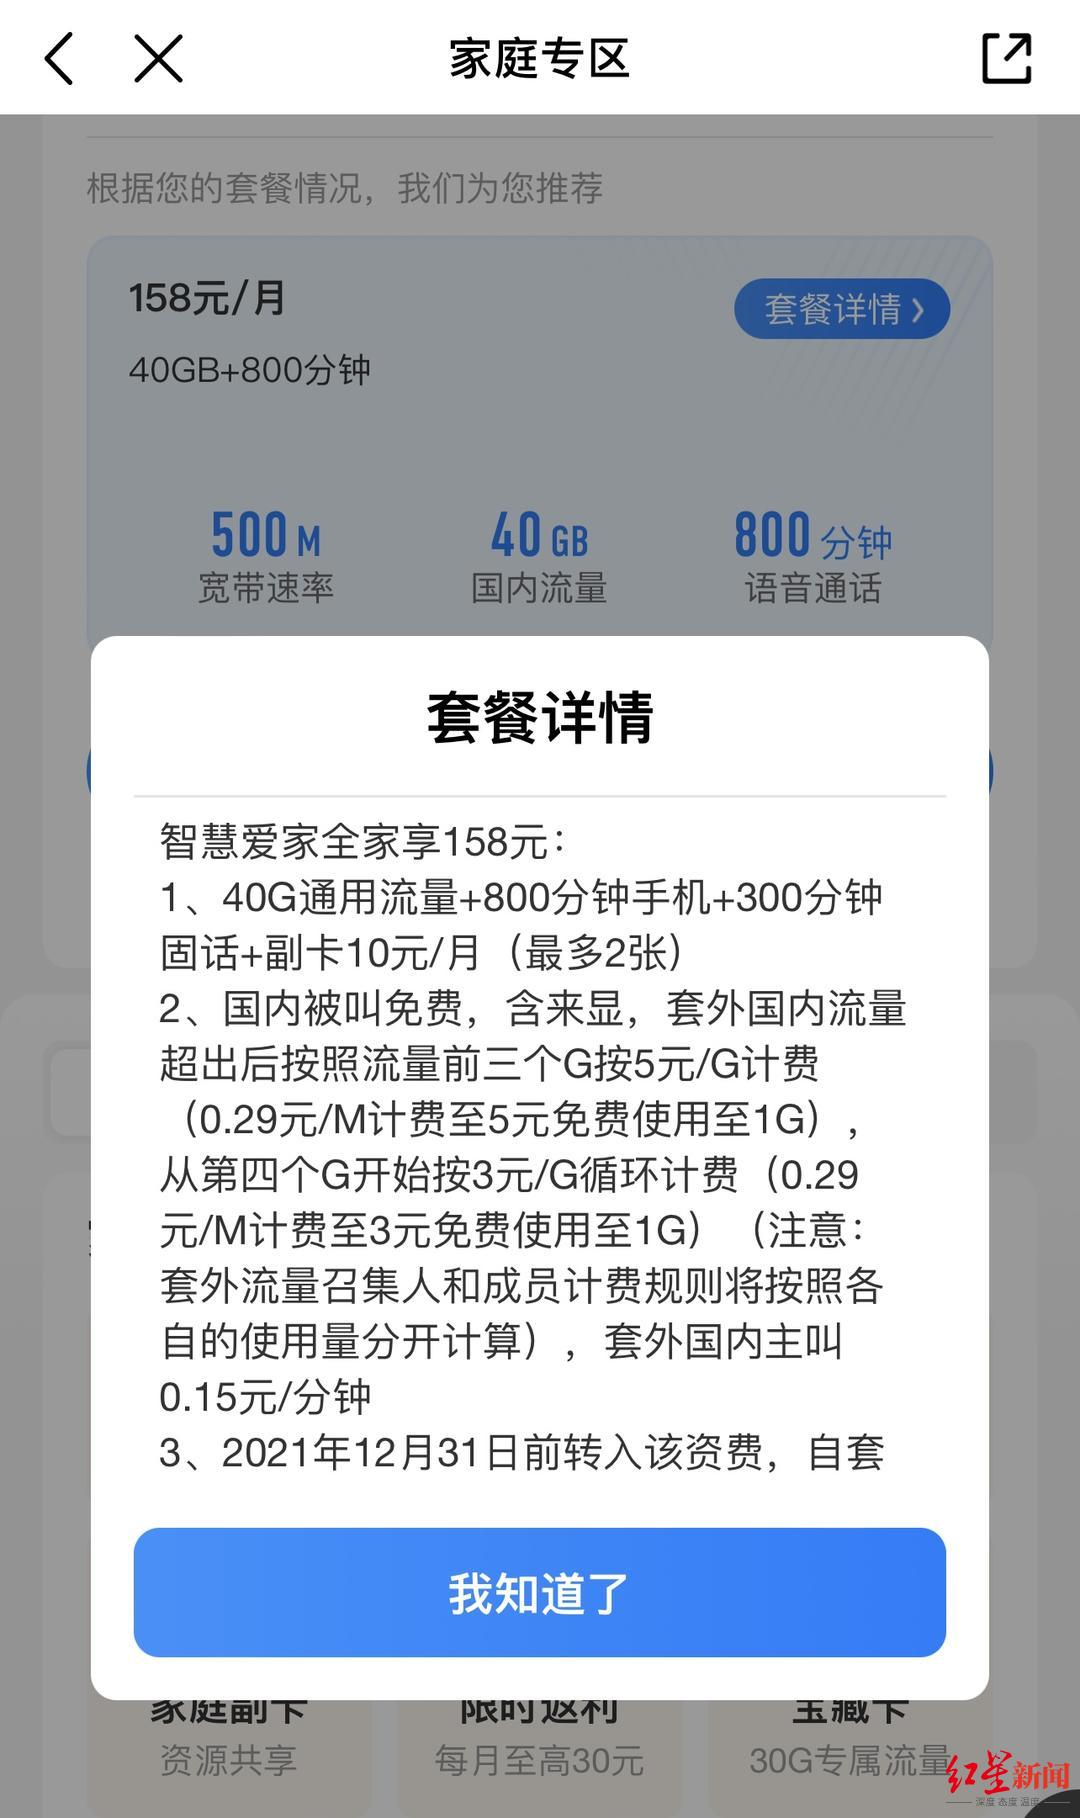 中国移动App显示的家庭套餐详情